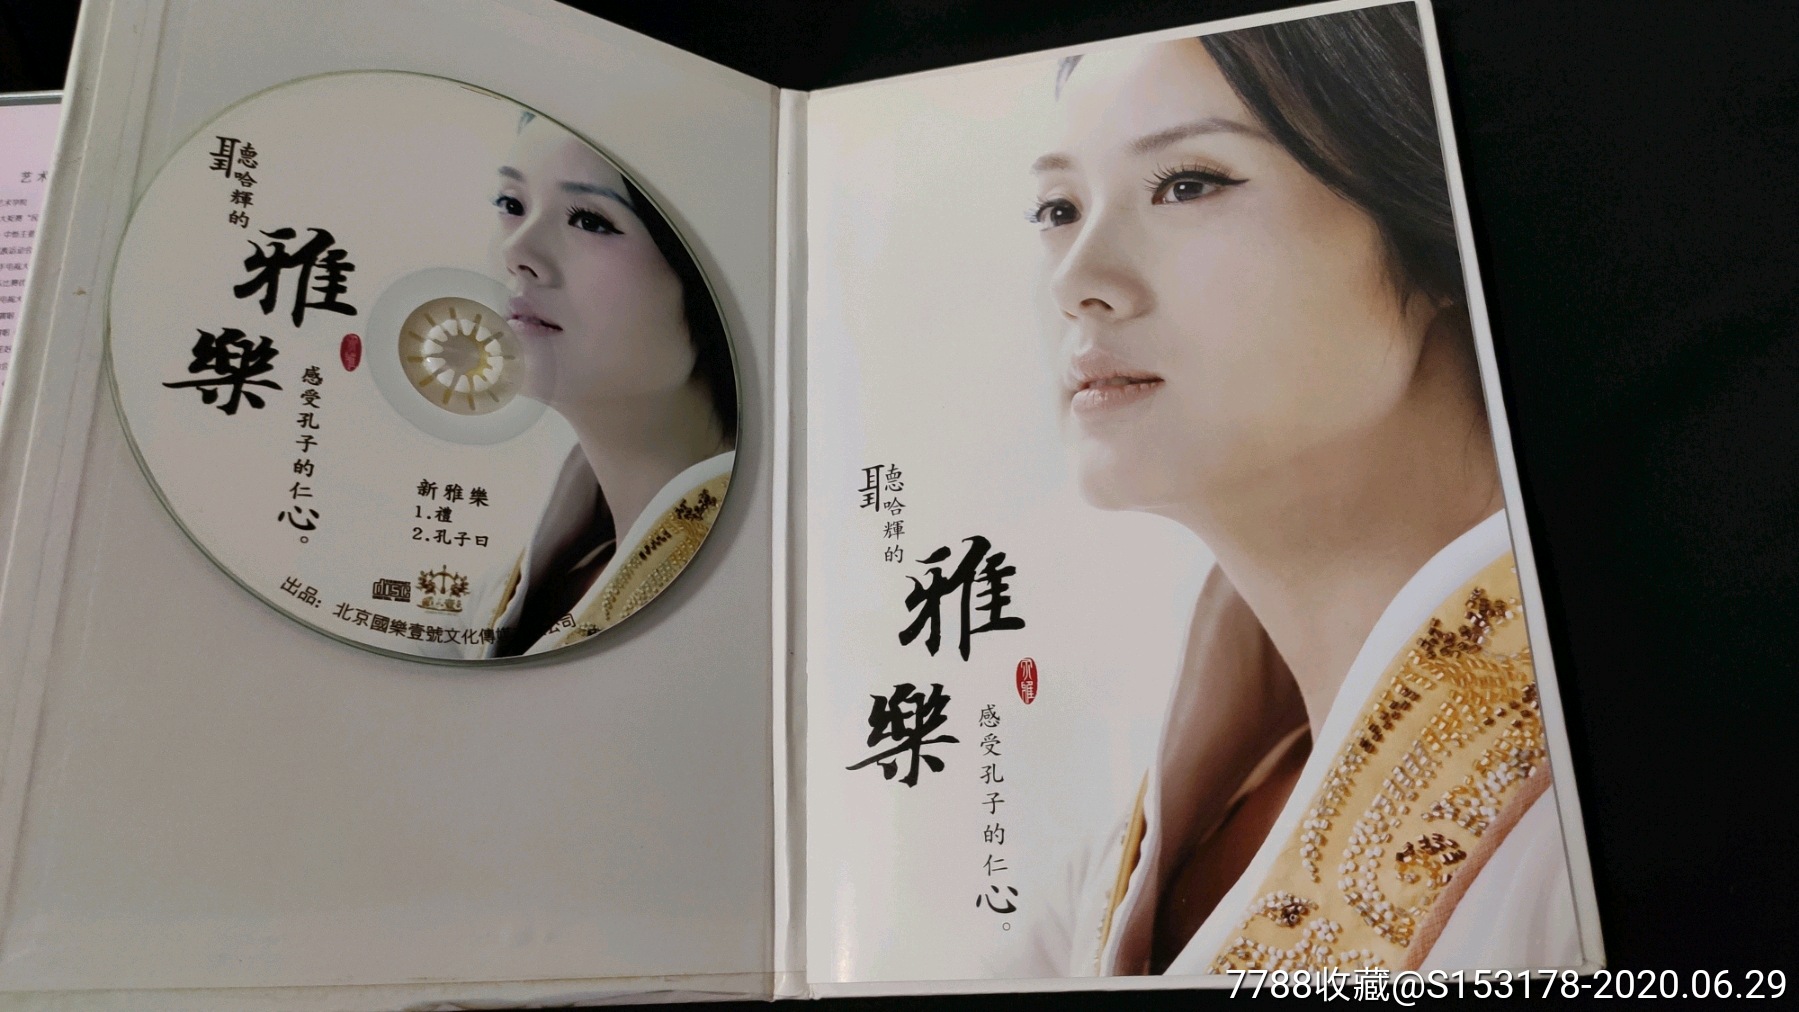 哈辉珍藏版单曲《新雅乐》cd 《空谷幽兰》vcd